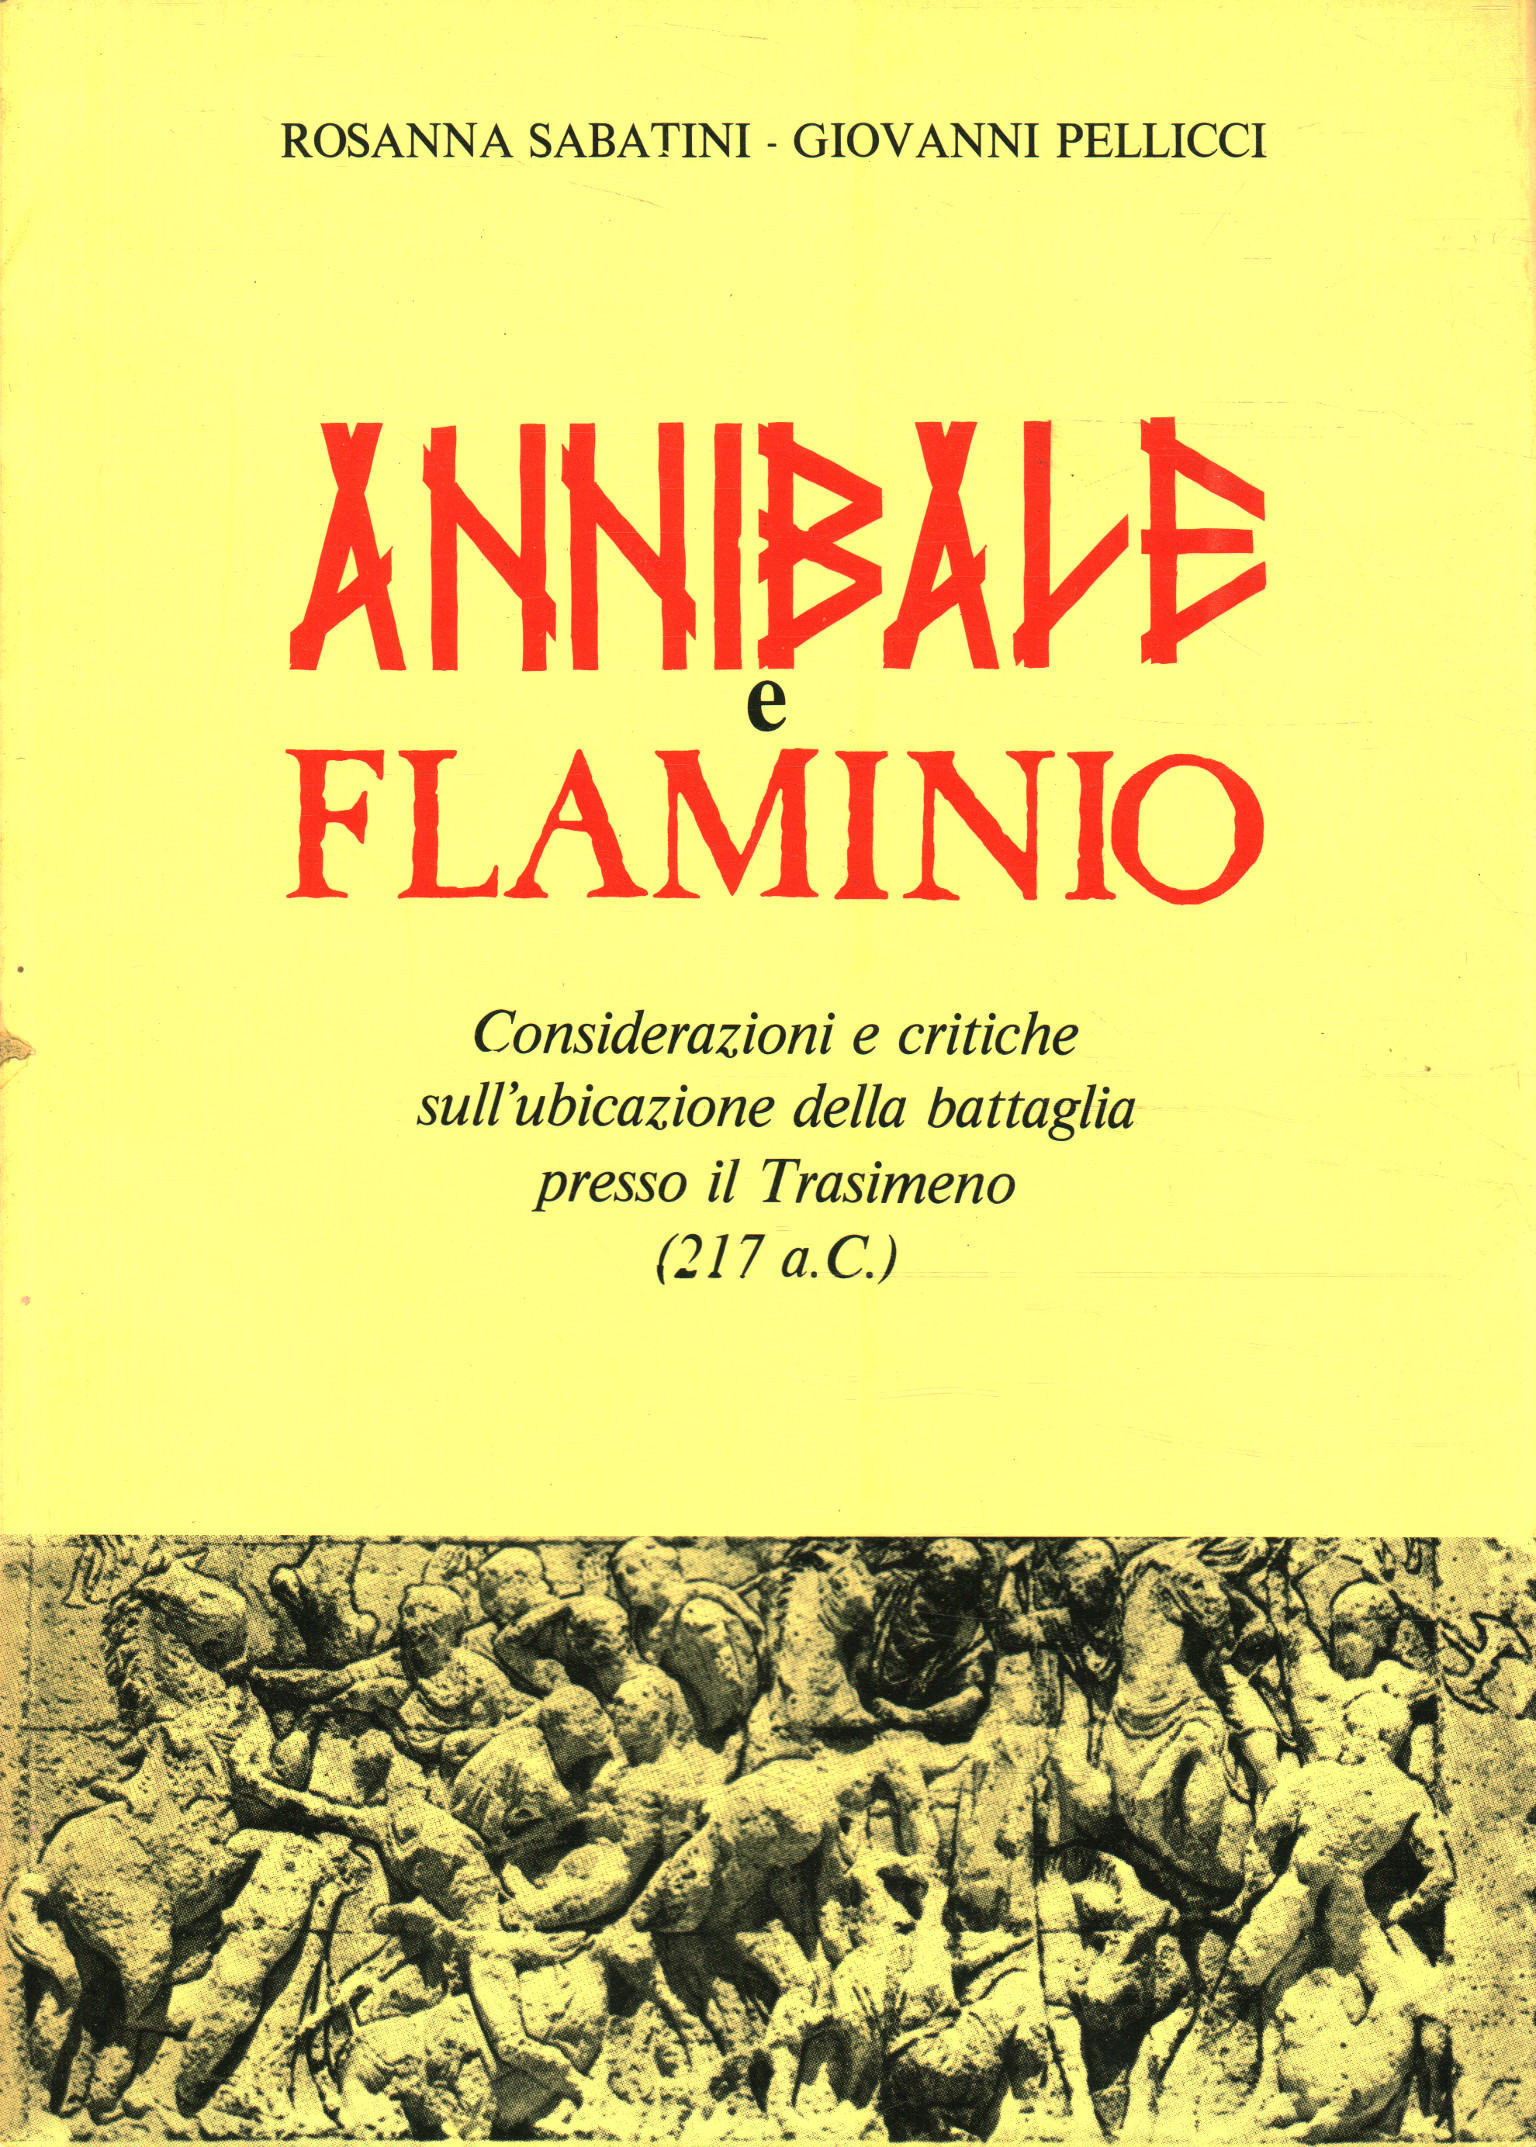 Hannibal et Flaminius